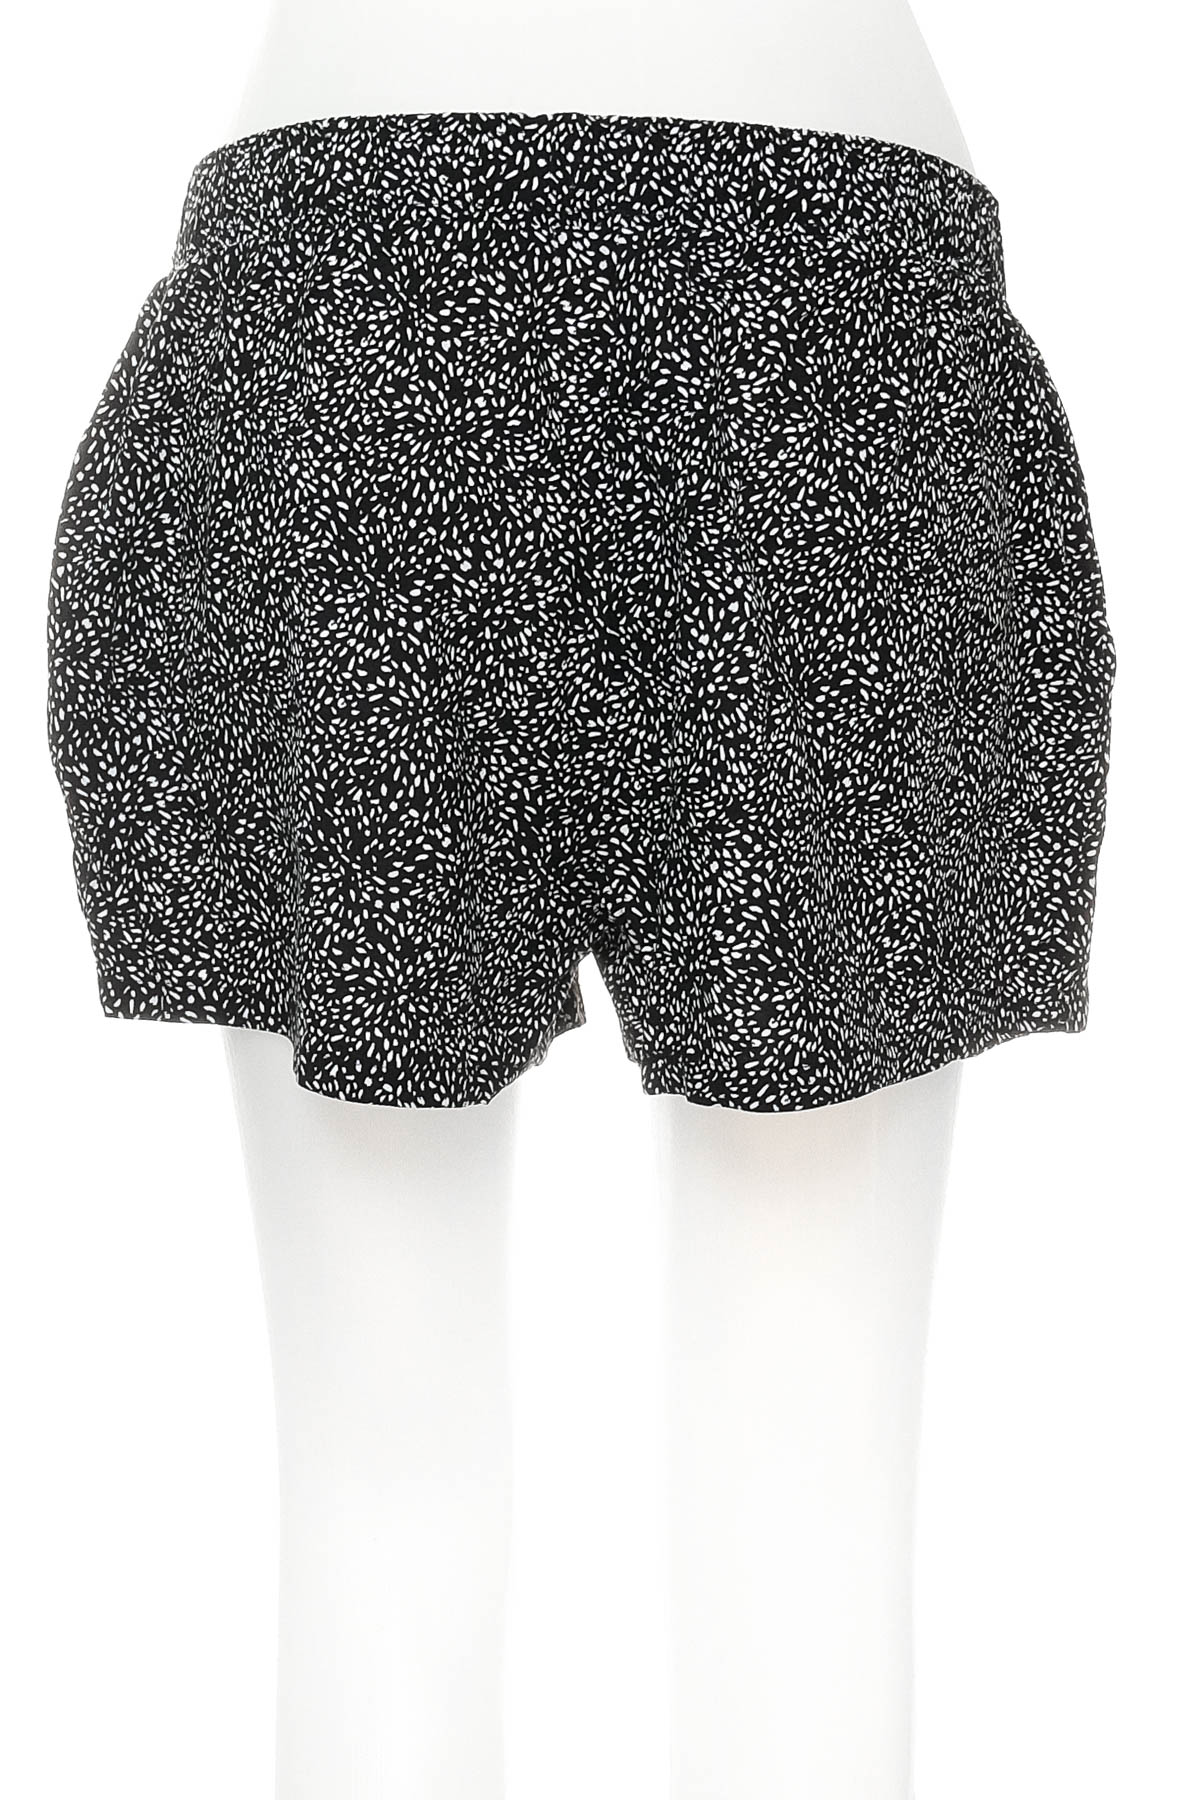 Female shorts - Kiabi - 1